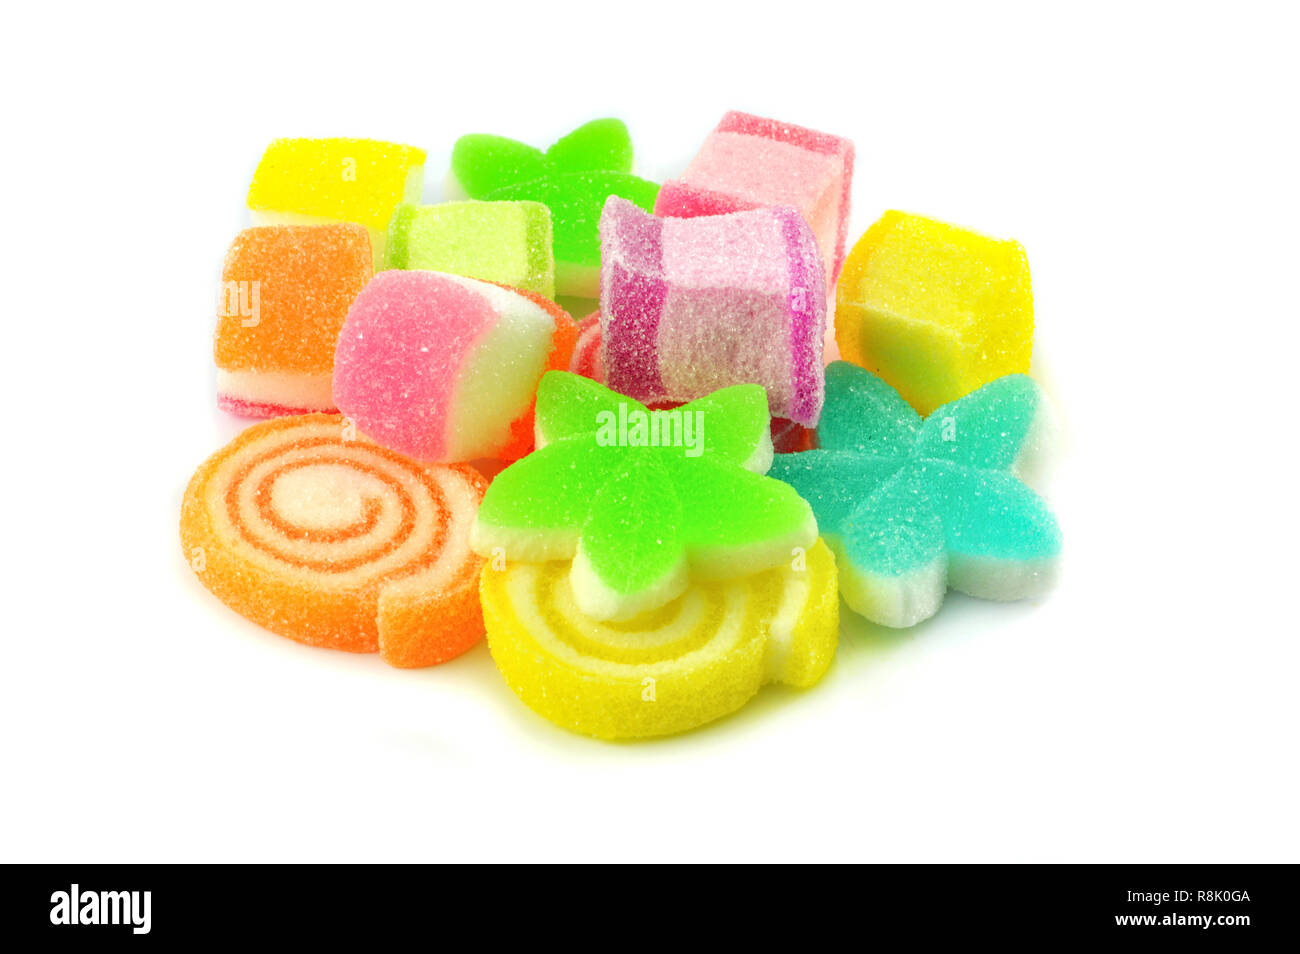 Farbenfrohe süß Gelee Bonbons auf weißem Hintergrund/Stapel von Dessert  Süßigkeit mit dem Zucker in verschiedenen Formen isoliert Stockfotografie -  Alamy